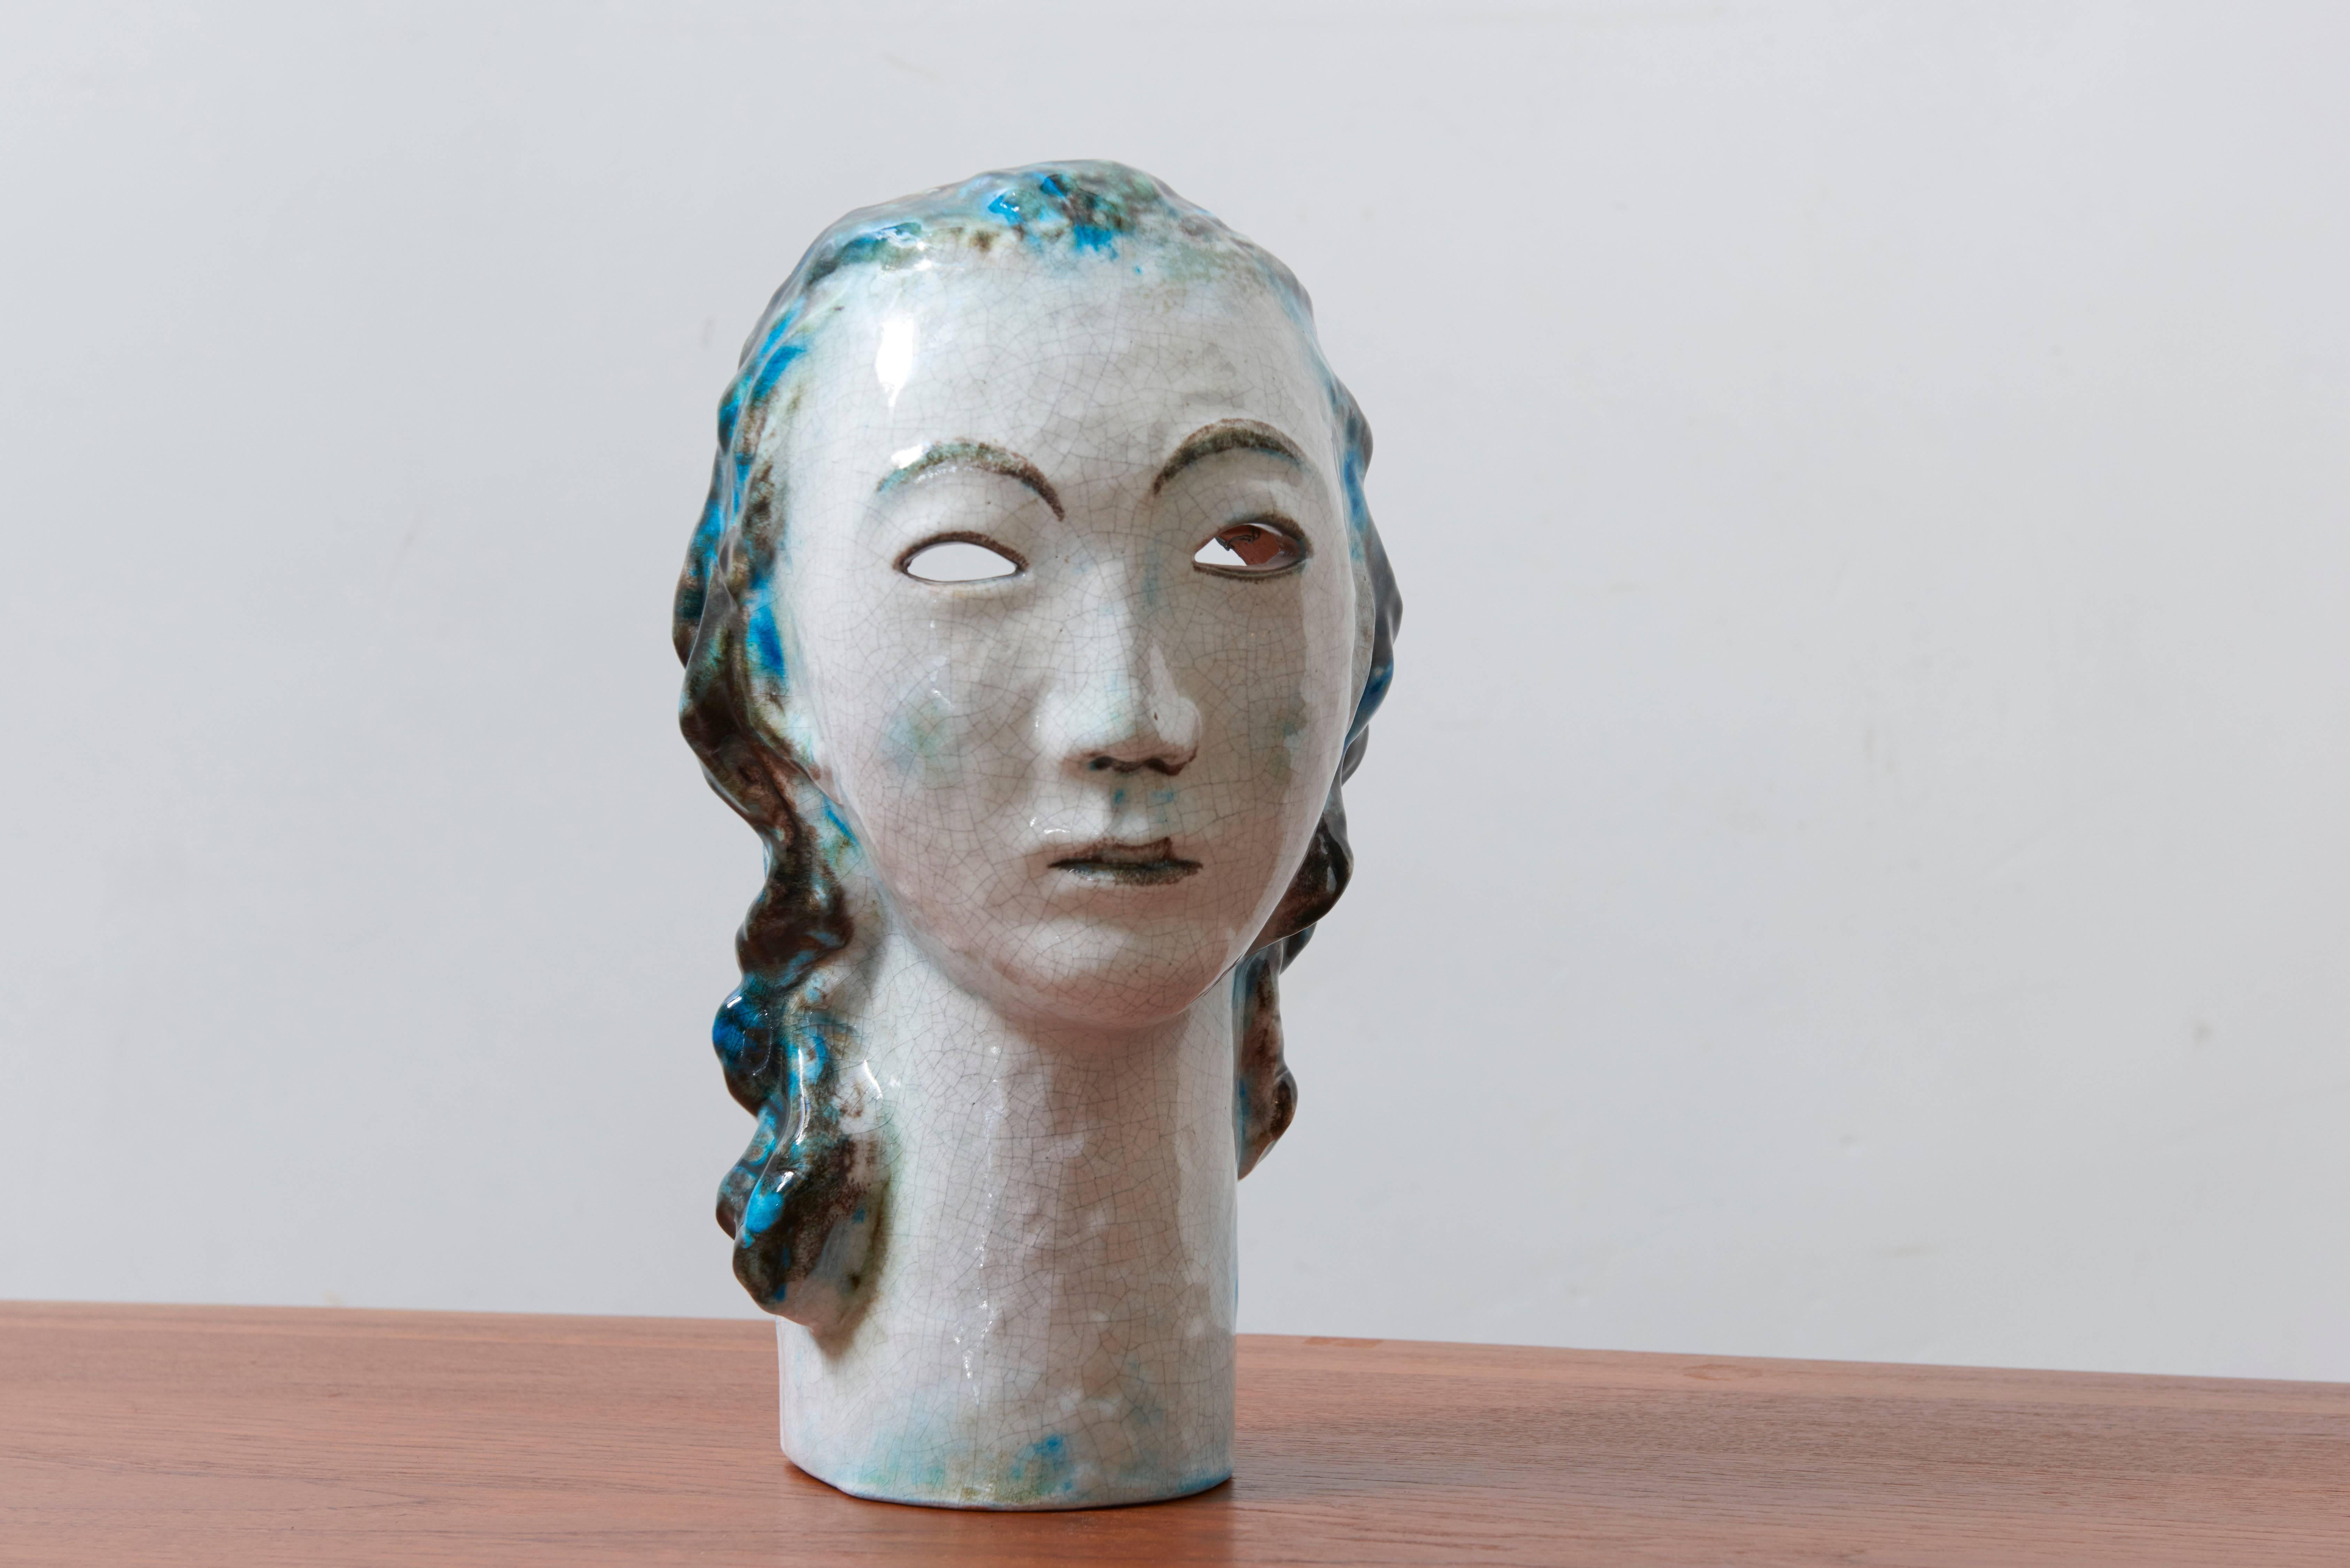 Schöne Skulptur aus braunem Steingut, modelliert im Ausdruck einer Frau in polychromer Glasur mit blauem Haar, hergestellt in Deutschland, 1930er Jahre.

Erwin Spuler (1906-1964), der zunächst an der Kunstgewerbeschule in Stuttgart studierte, von